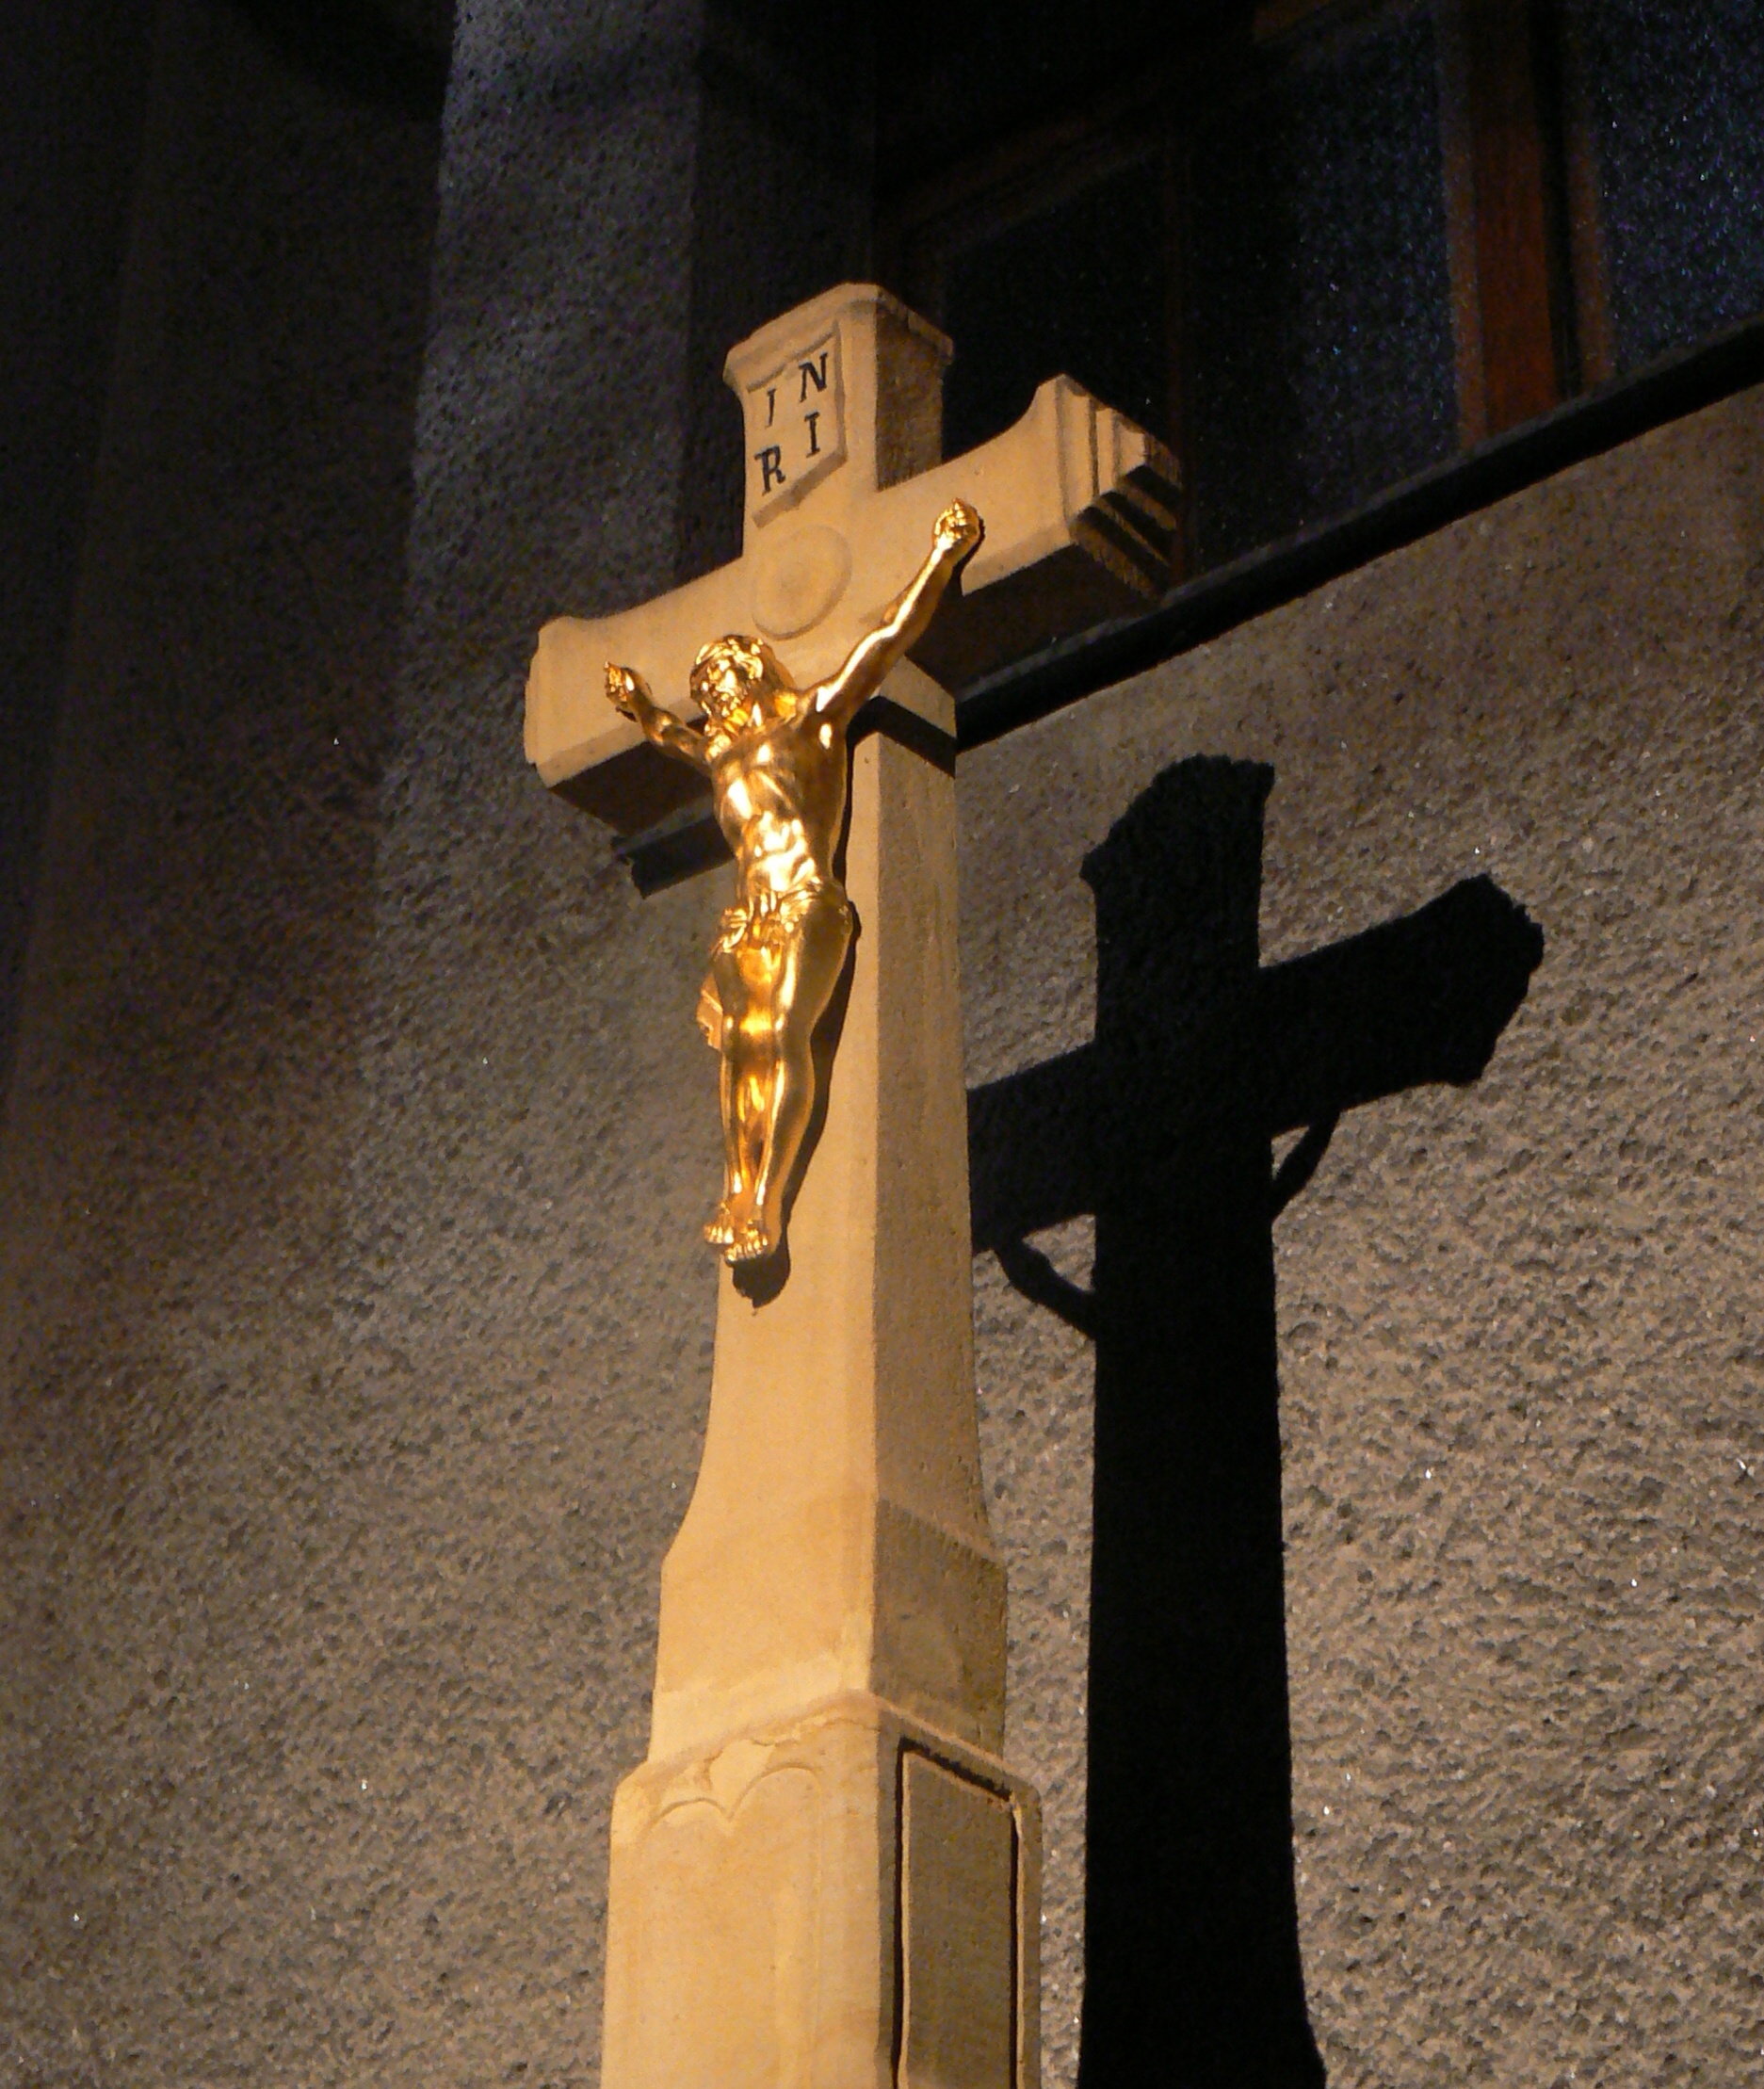 Kříž před kostelem